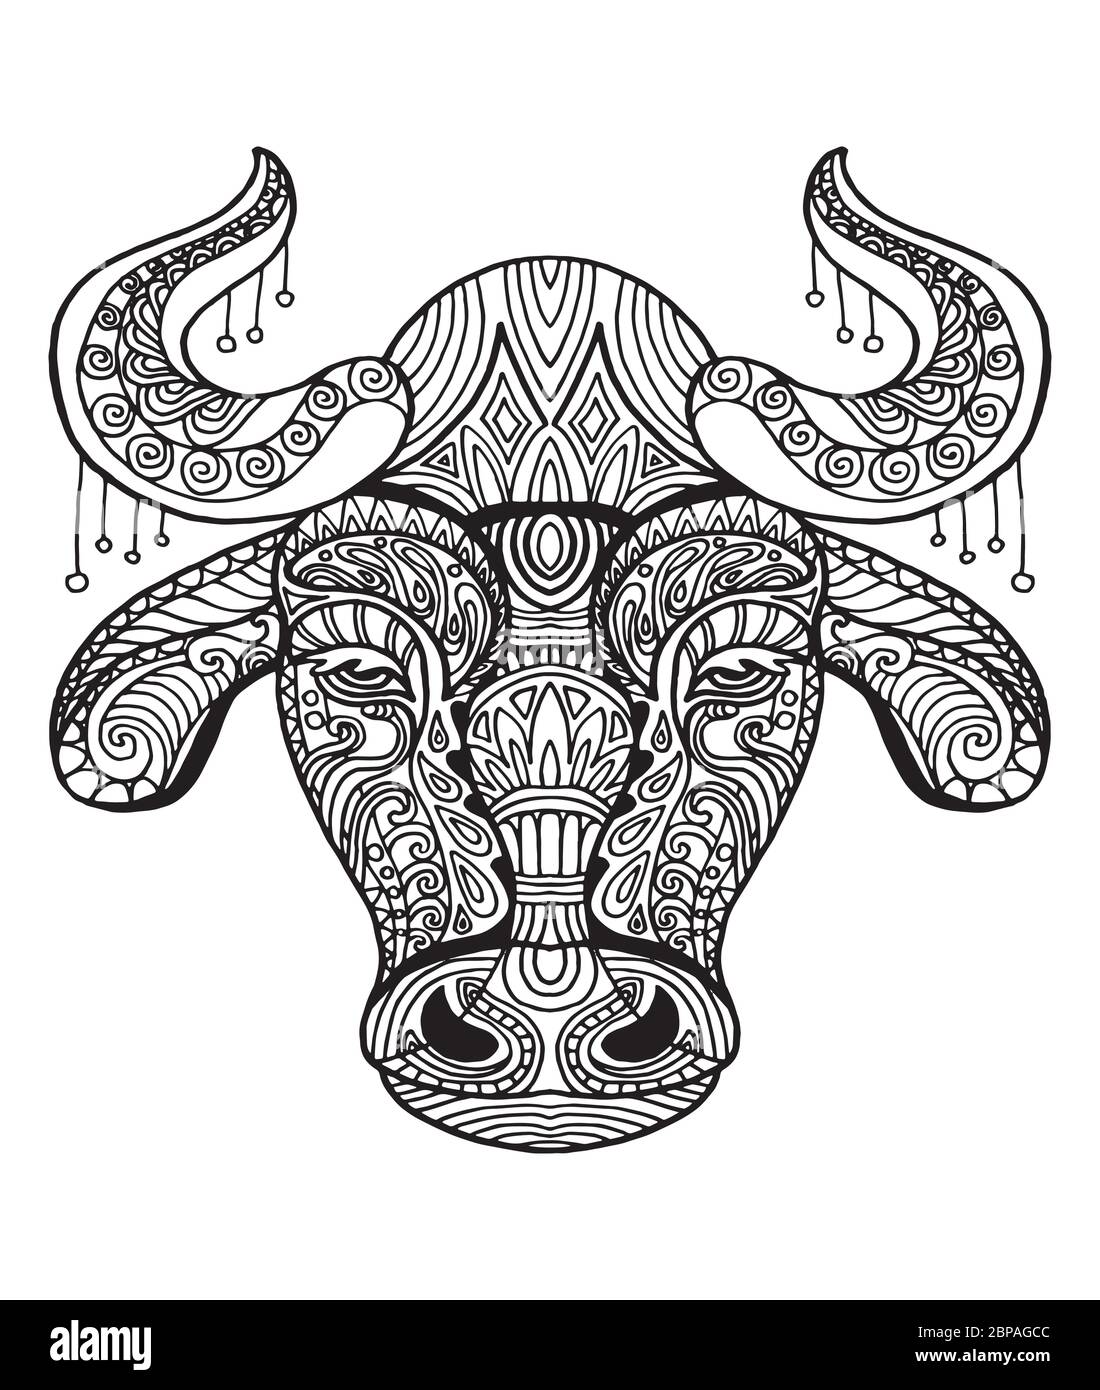 Vektor dekorativen Doodle ornamentalen Kopf des Stiers. Abstrakte Vektor-Illustration von Bull schwarze Kontur isoliert auf weißem Hintergrund. Abbildung des Lagerbestands Stock Vektor